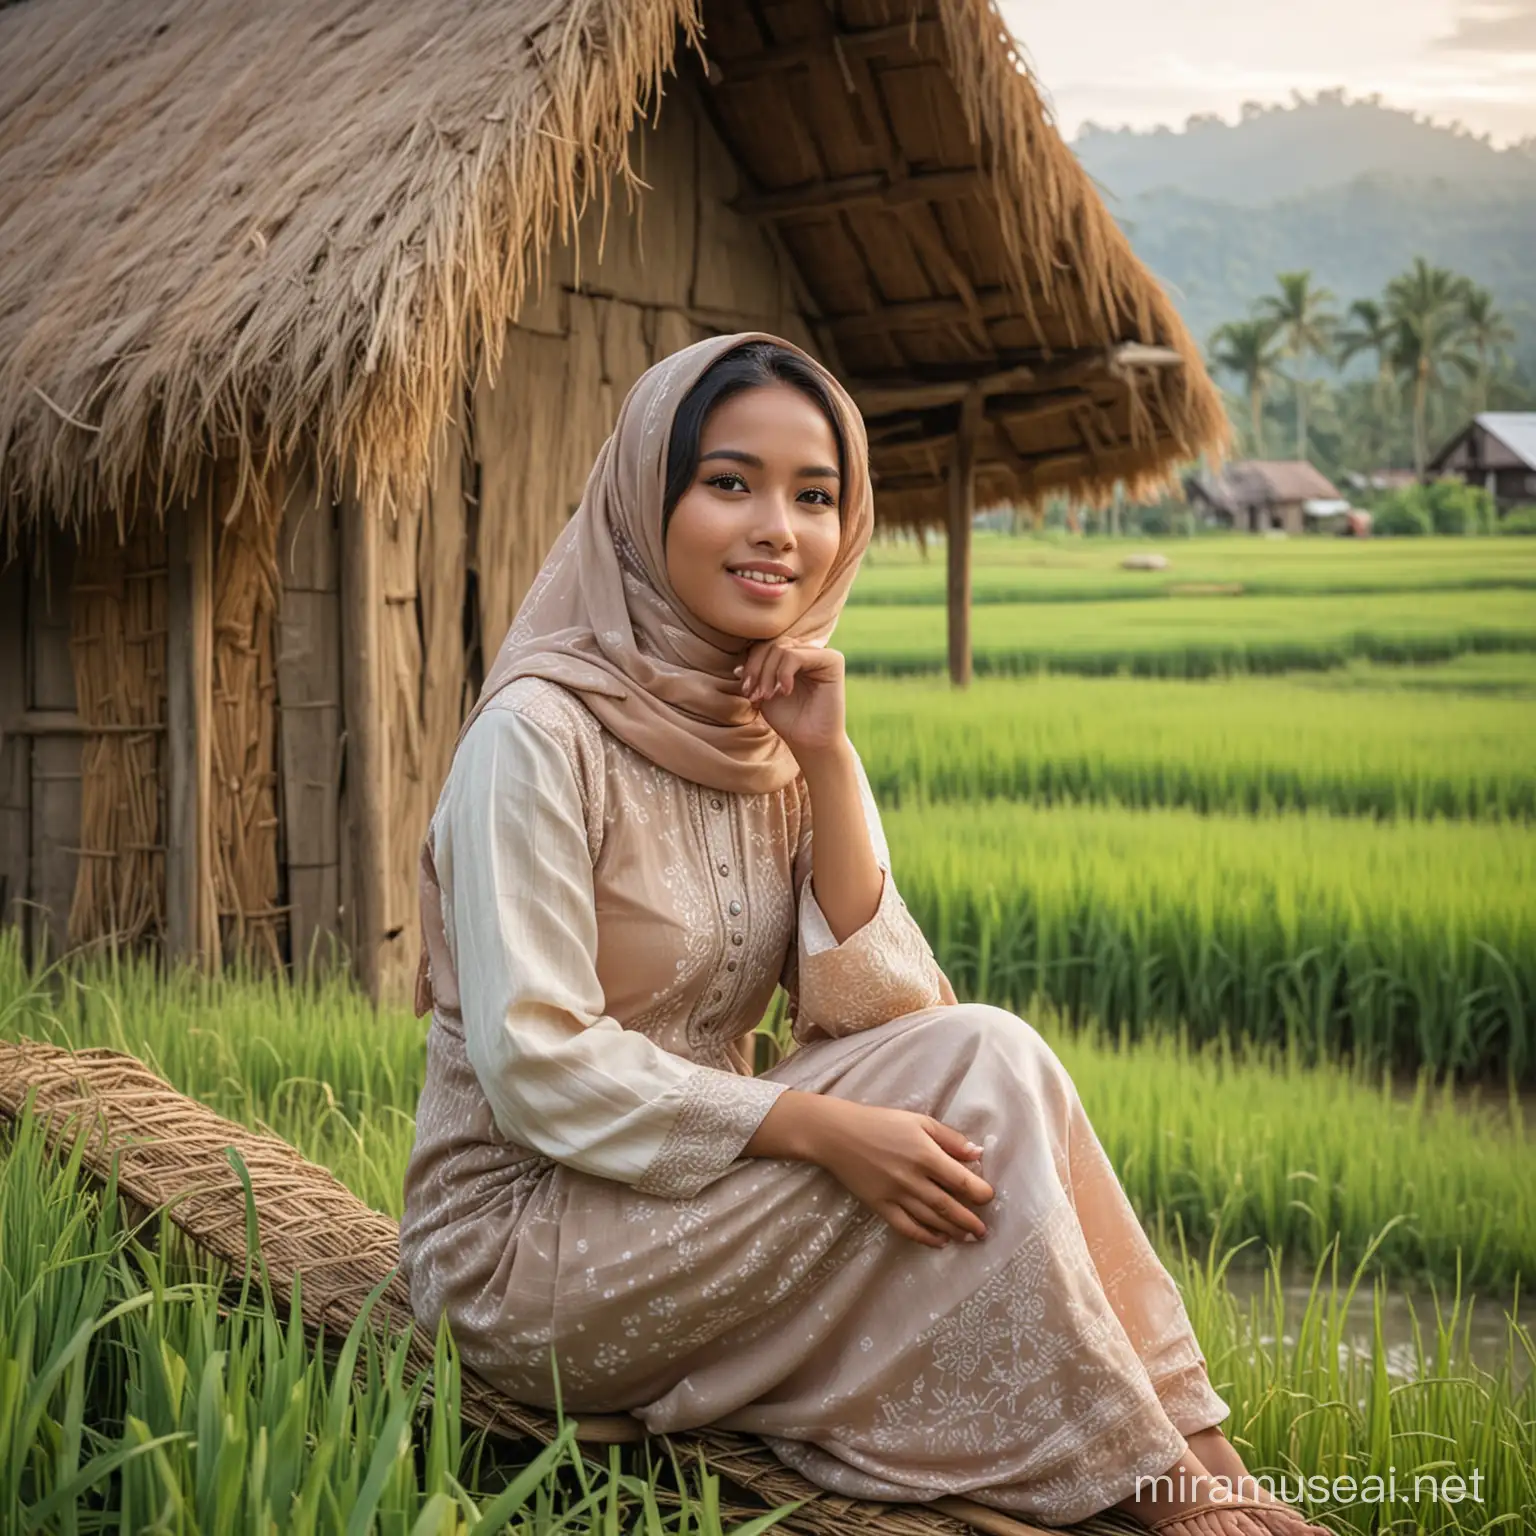 seorang wanita indonesia cantik memakai busana gadis pedesaan dan hijab sedang duduk di gubuk tepi sawah berkhayal dan mimpi bertemu keluarga di kampung.